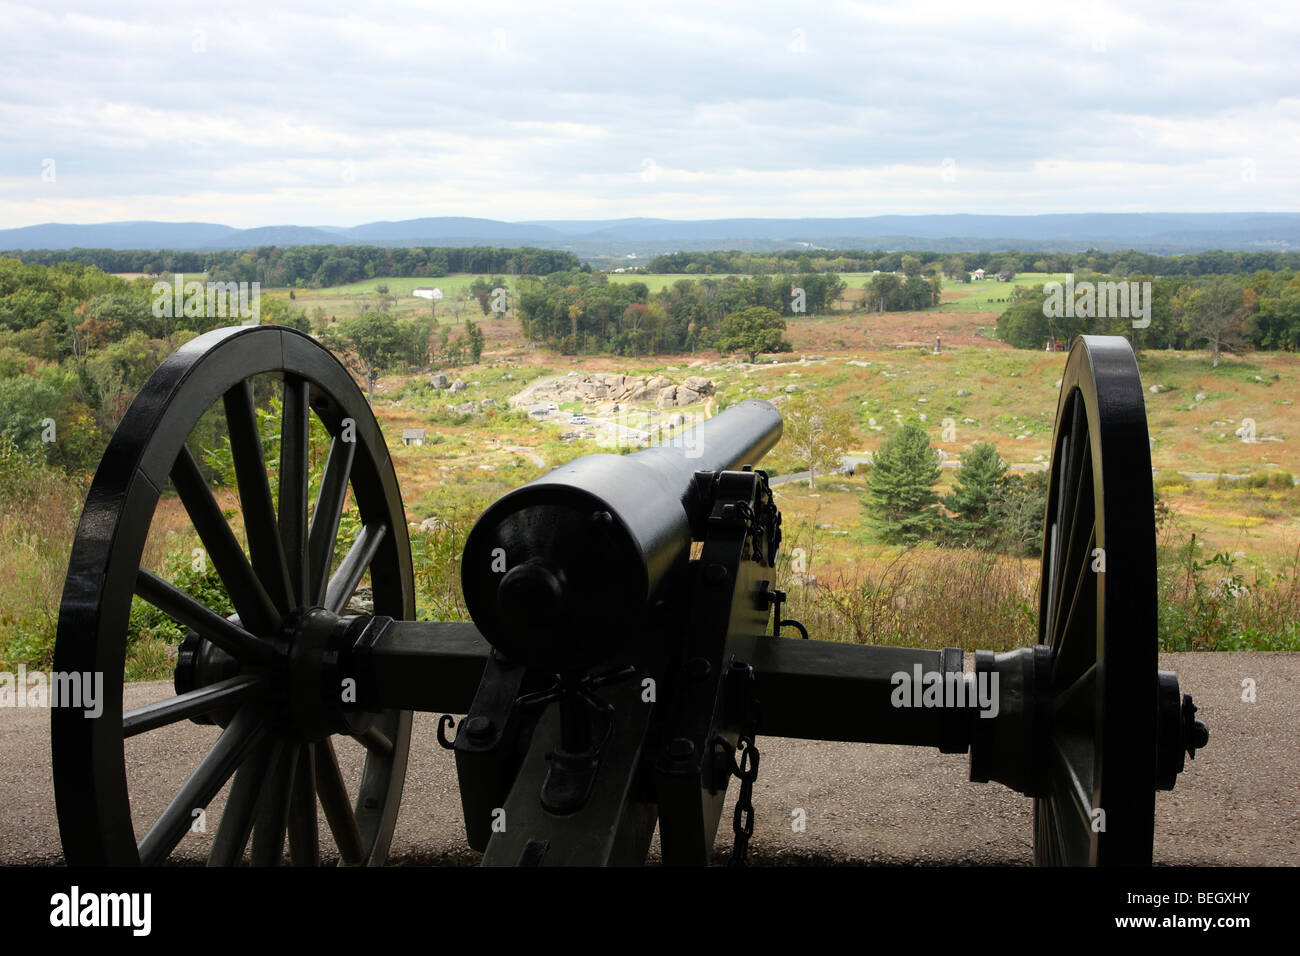 Unions-Armee 10-Pfünder Parott Gewehr Kanone auf Little Round Top. Des Teufels Höhle steht auf der linken Seite der Kanone Schnauze. Gettysburg. Stockfoto